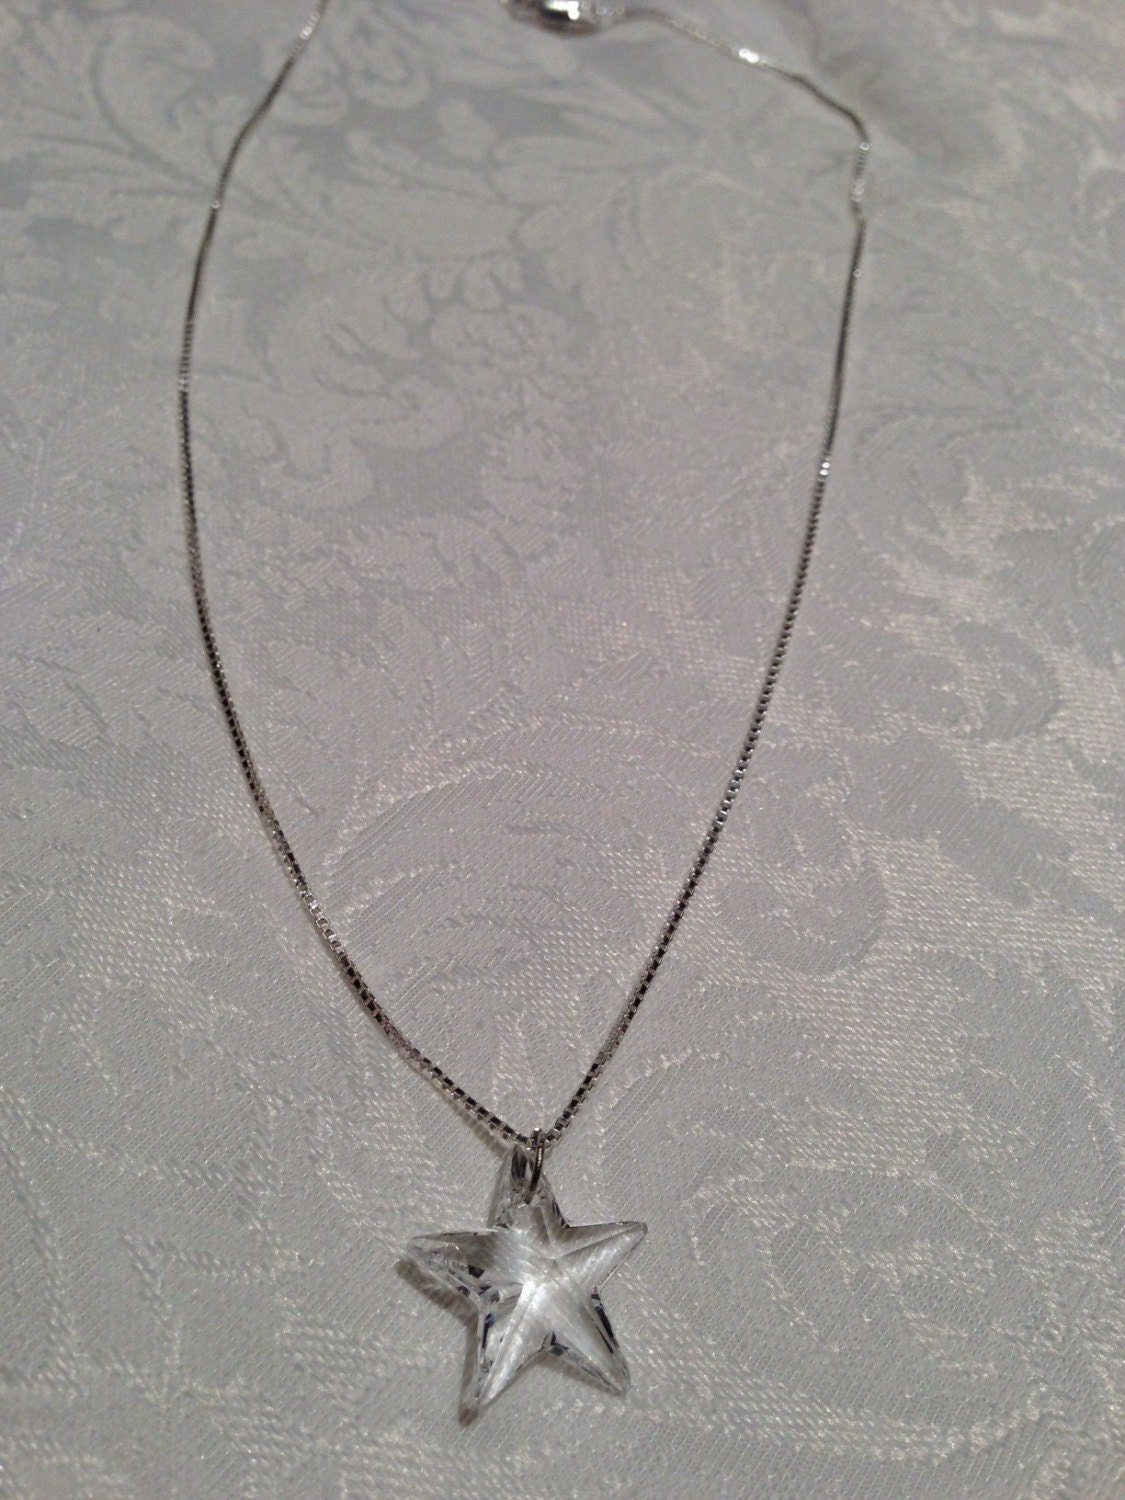 Star Swarovski necklace Pendant Necklace by Martasjewelry